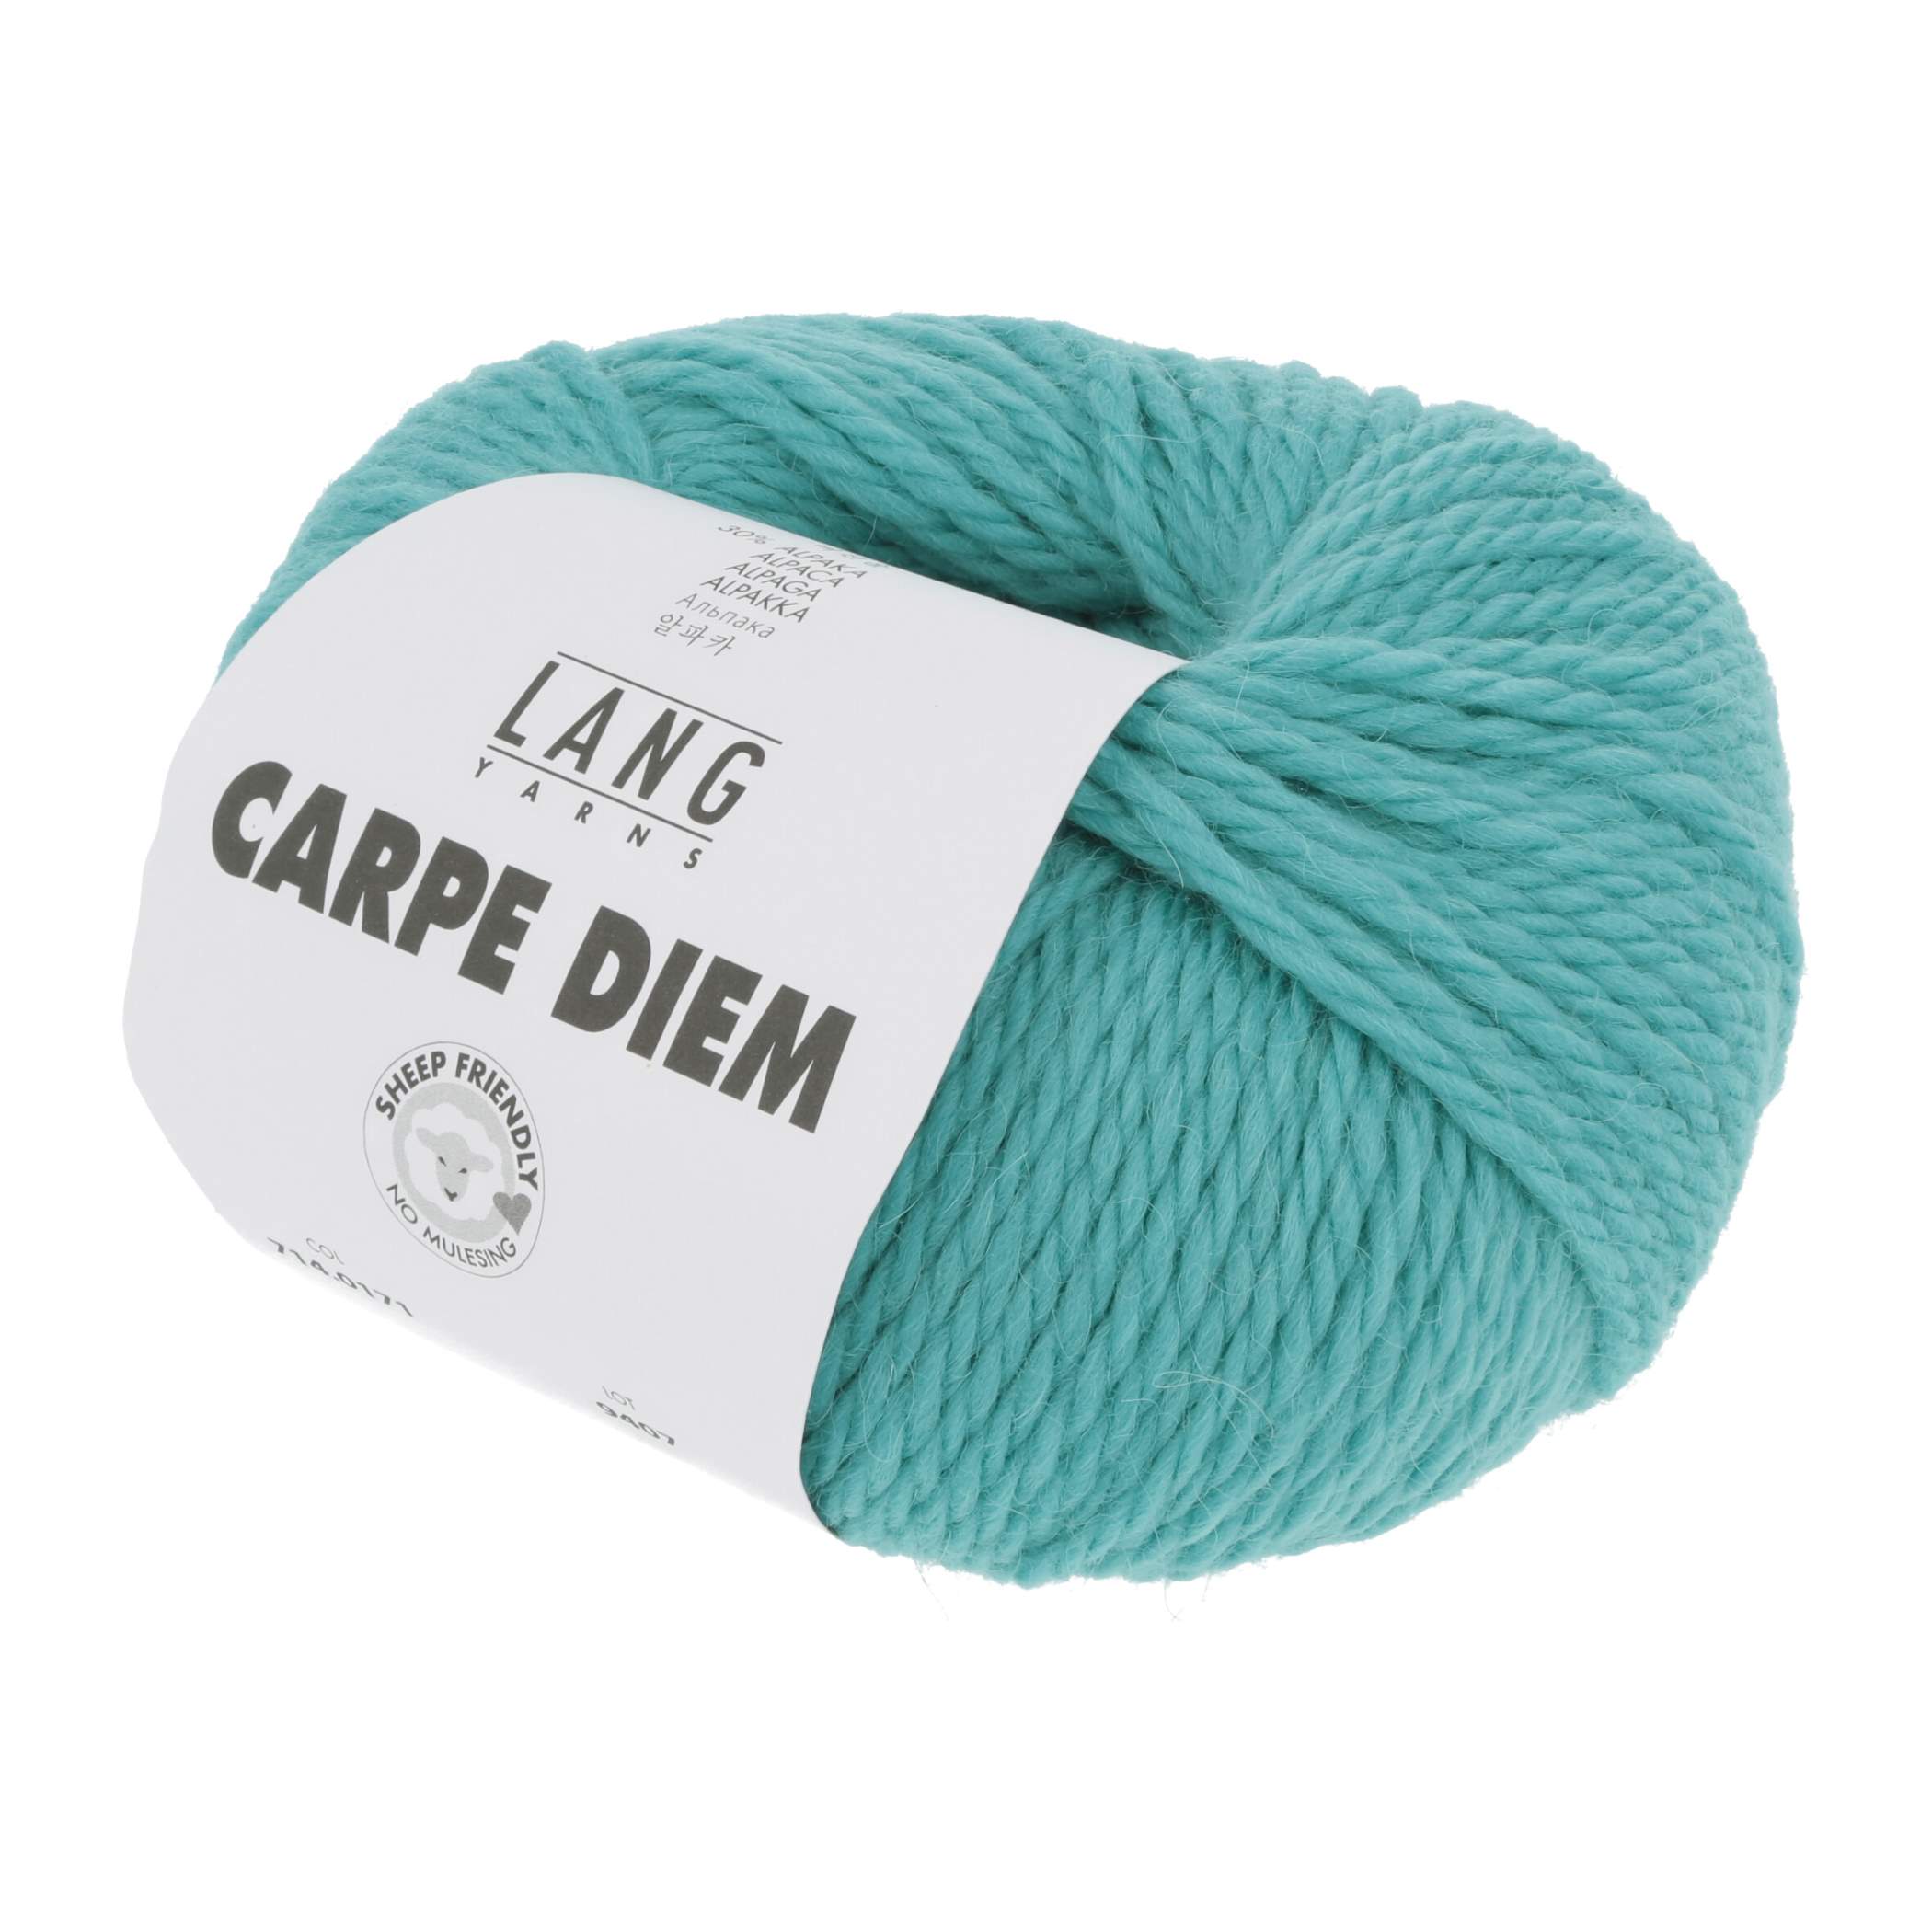 Carpe Diem - Lang Yarns